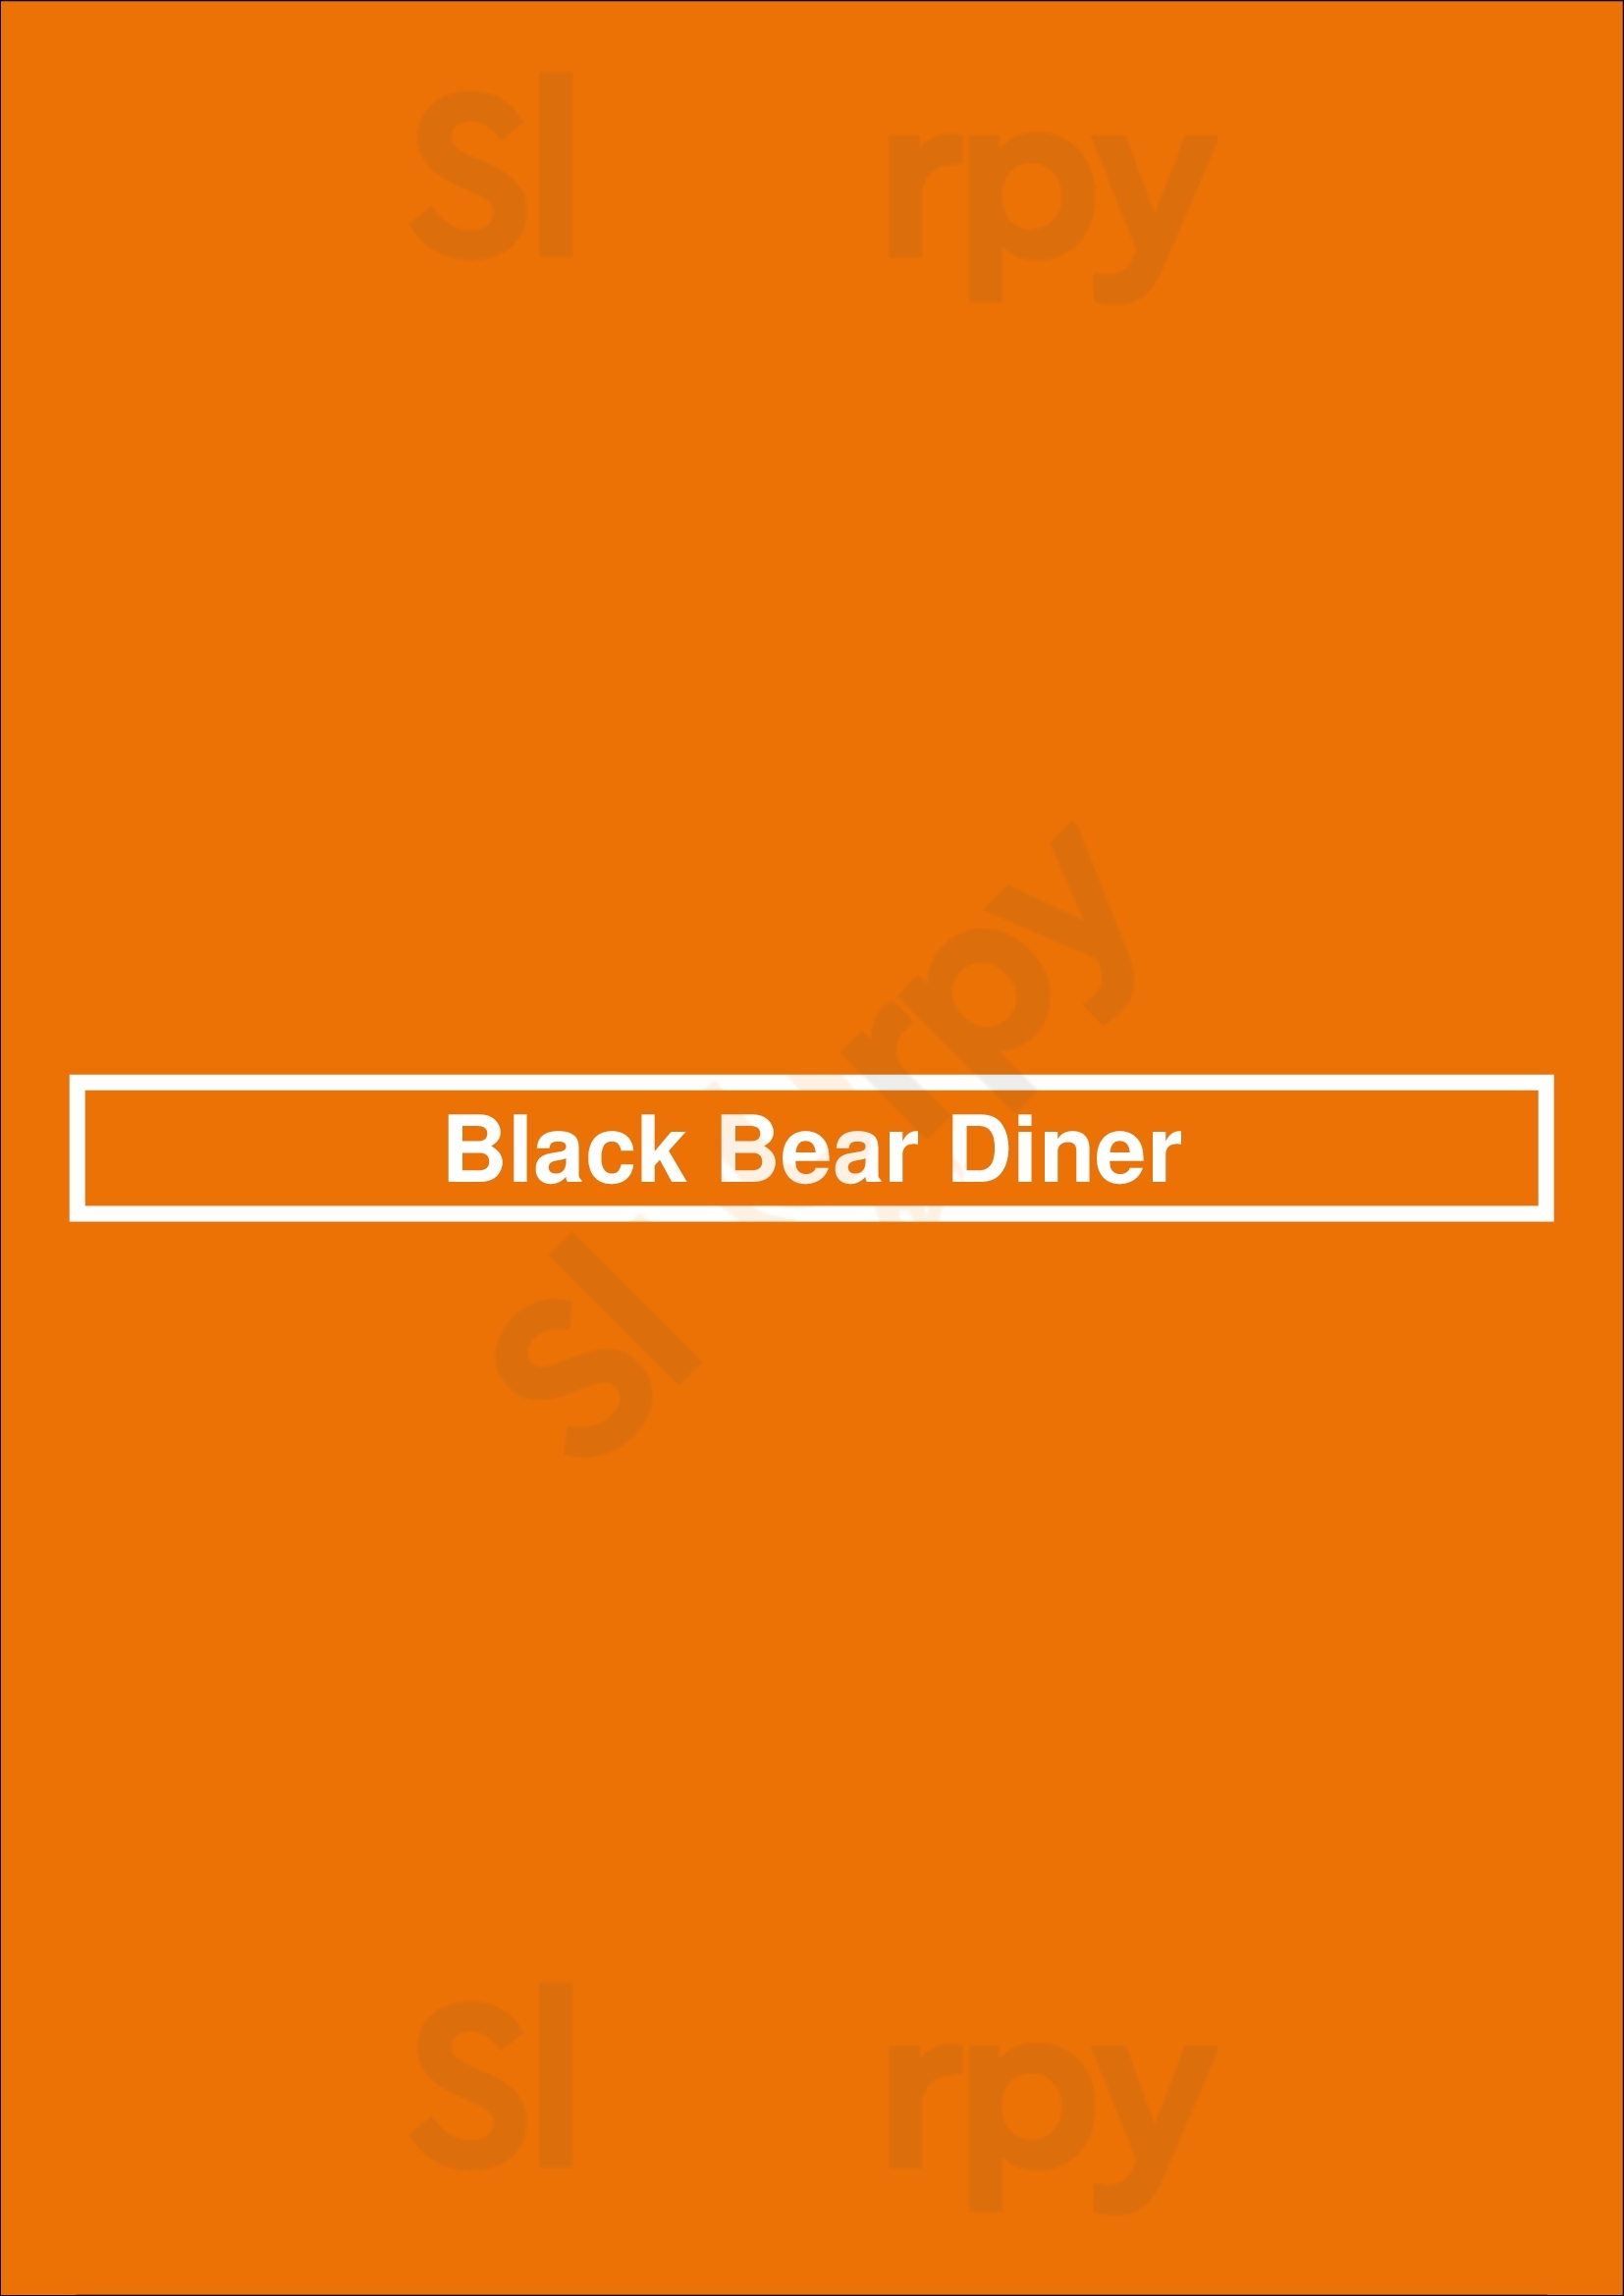 Black Bear Diner Orem Menu - 1